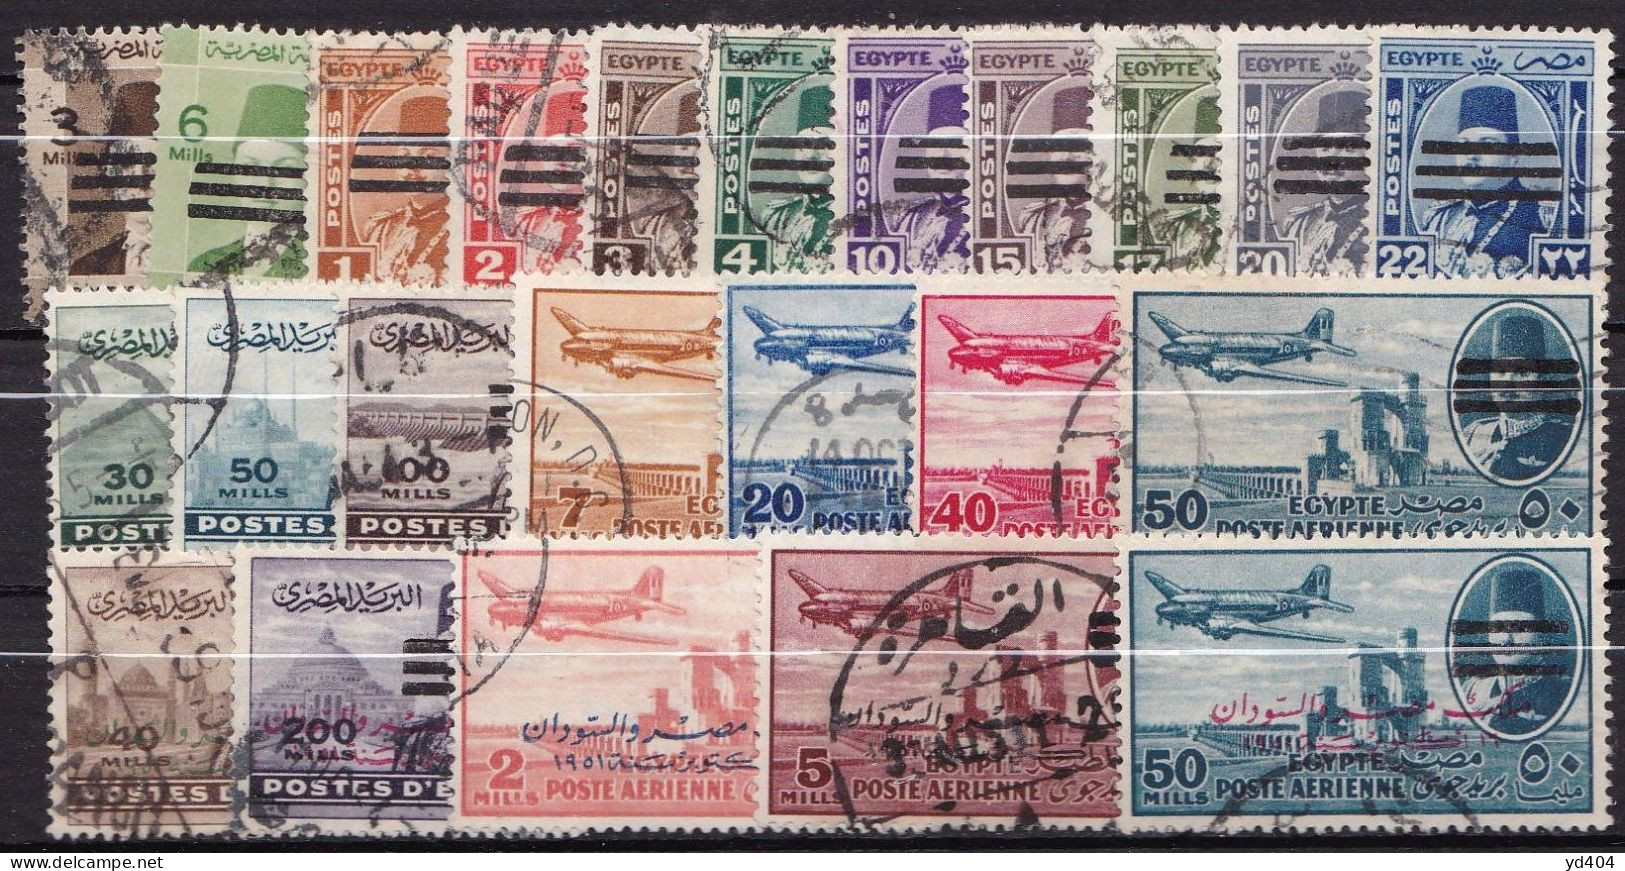 EG100 – EGYPTE – EGYPT – 1953 – 3 BARS OBLITERATED SET – SG # 436-489 USED 26 € - Gebruikt